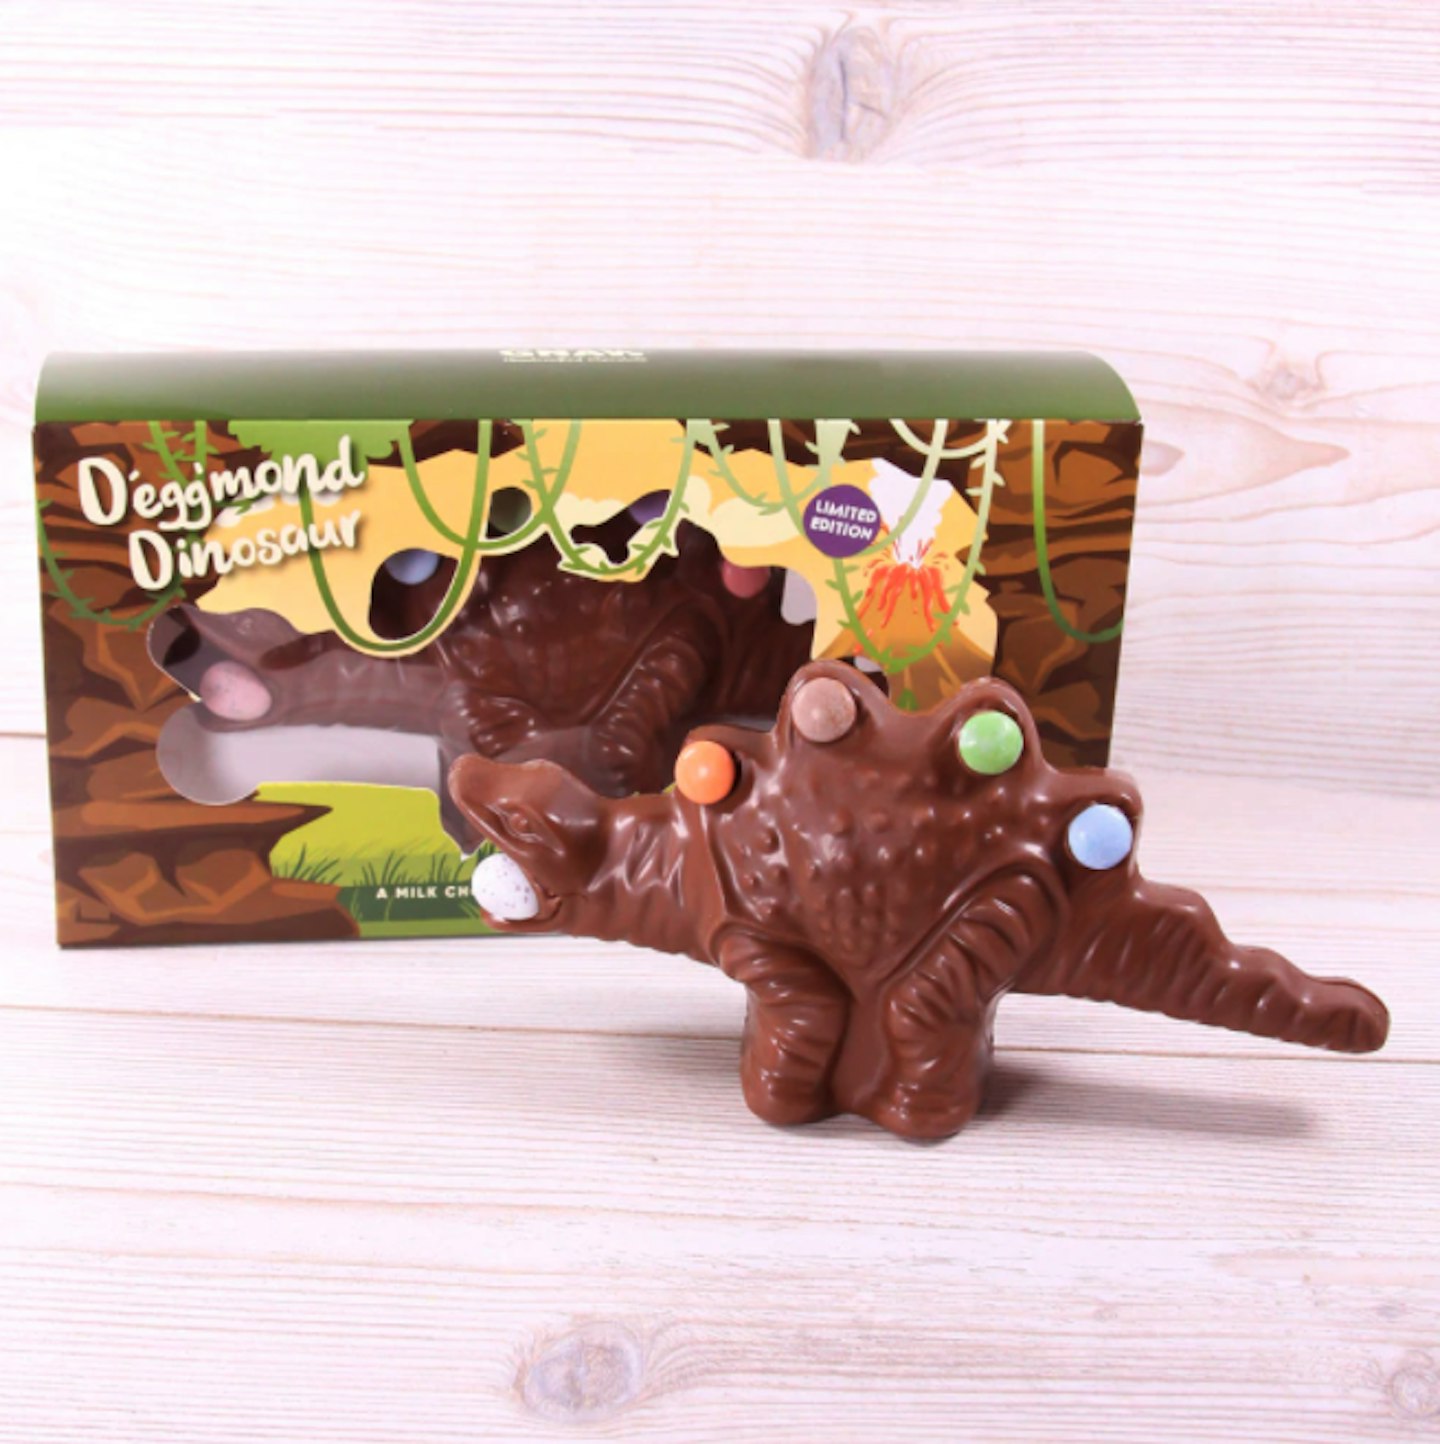 D'egg'mond The Dinosaur Novelty Easter Egg